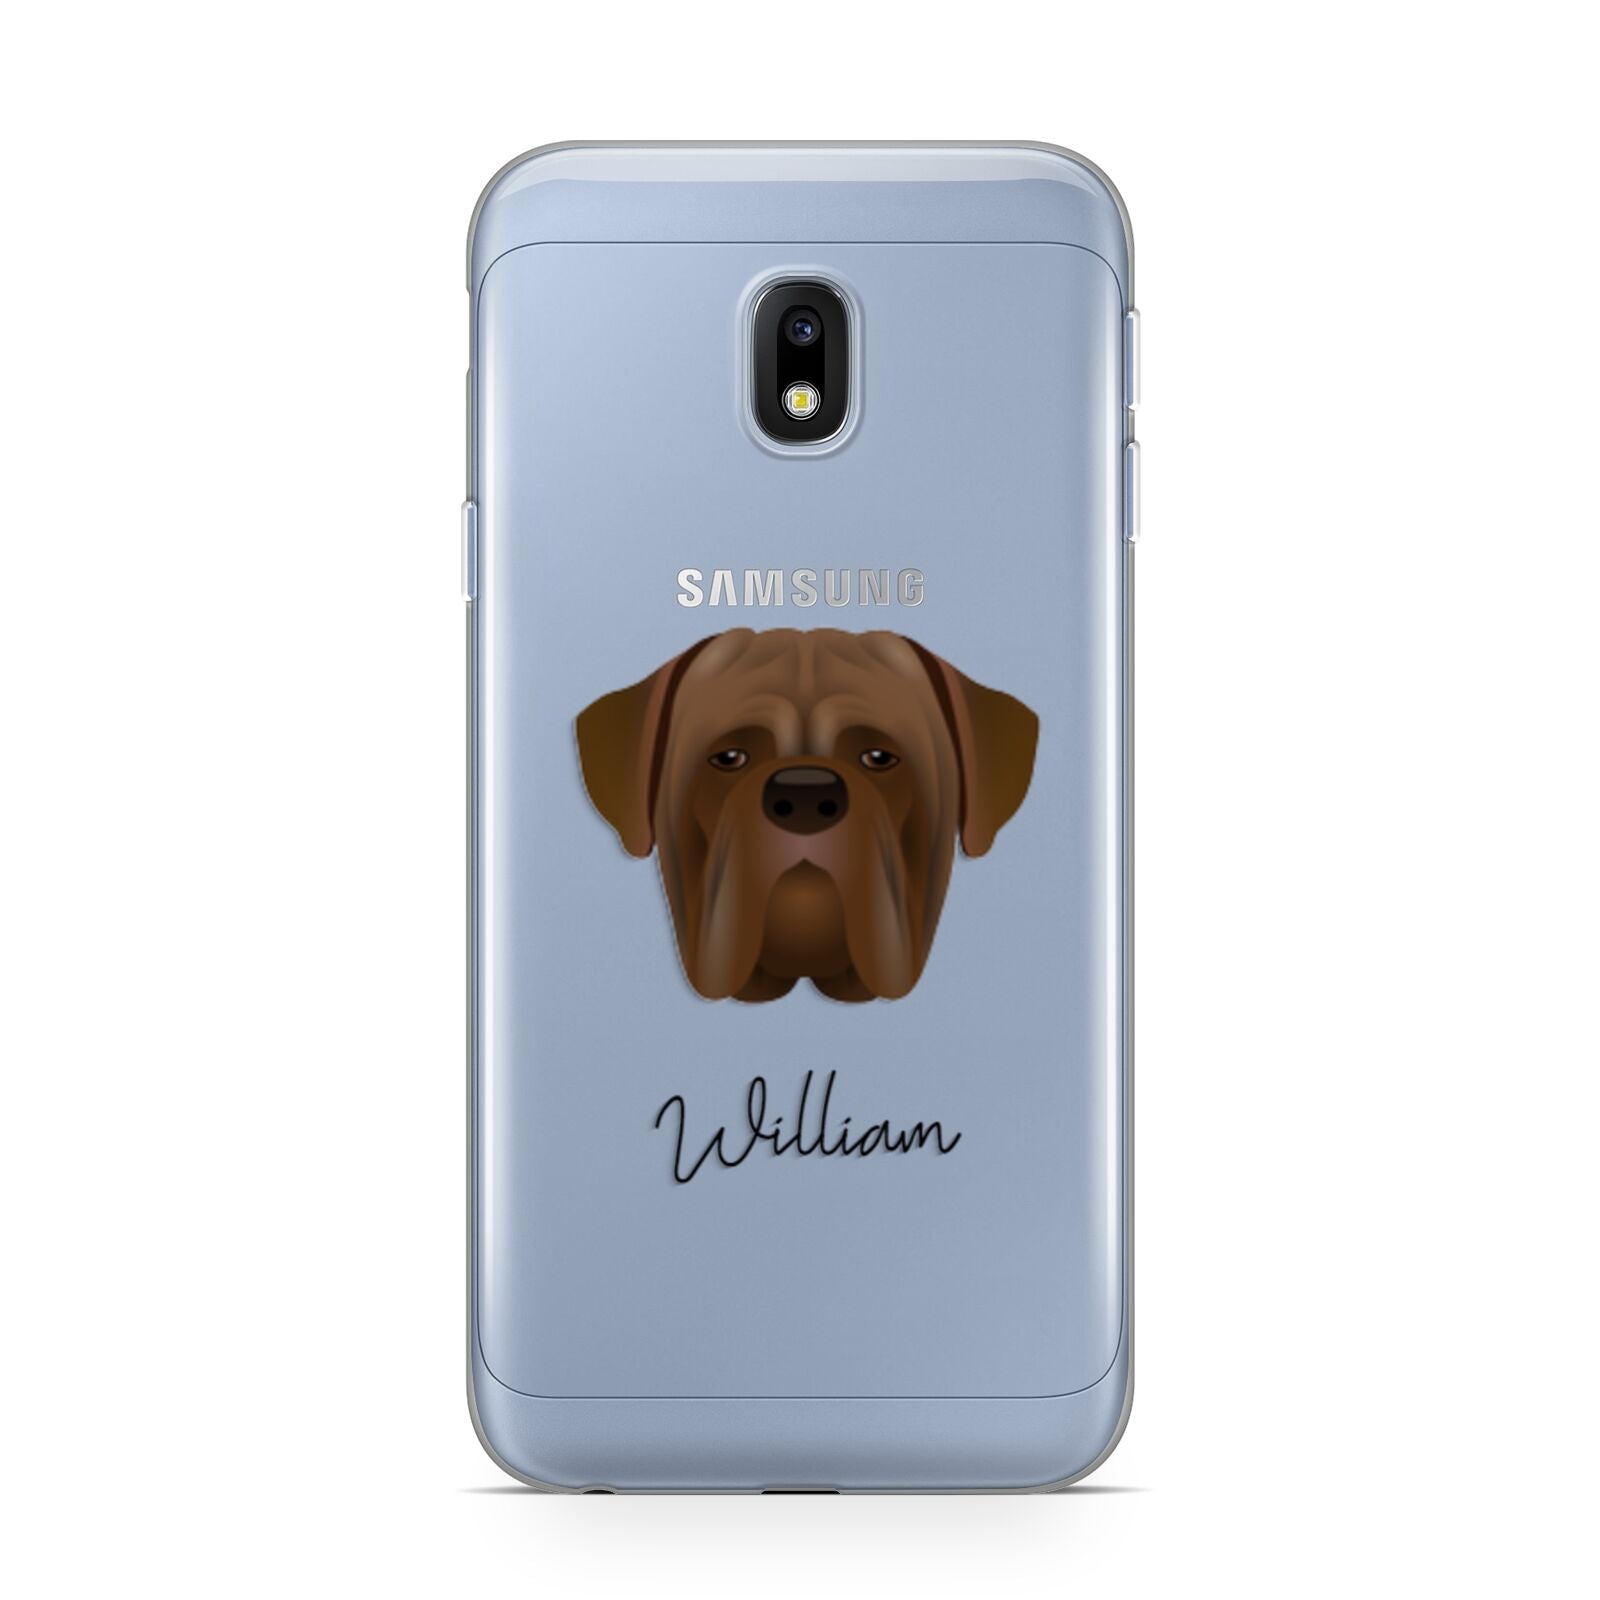 Dogue de Bordeaux Personalised Samsung Galaxy J3 2017 Case